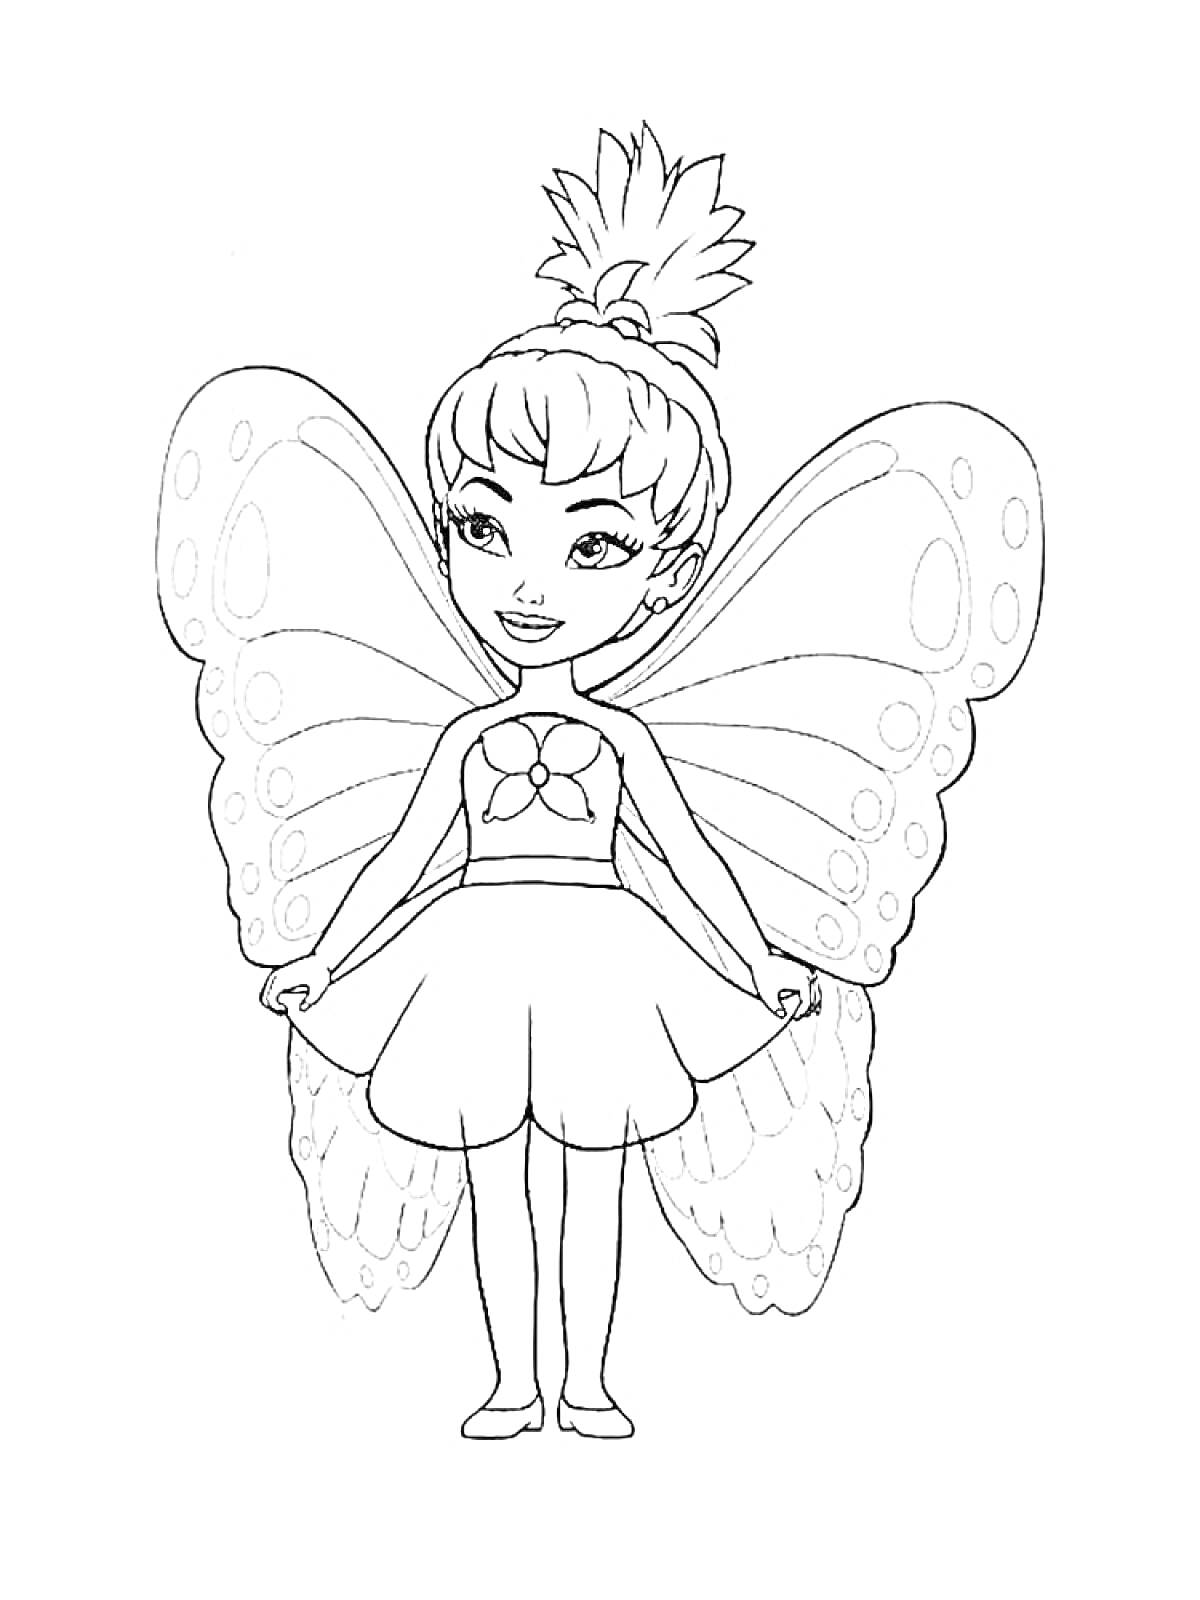 Раскраска Фея с бабочковыми крыльями, волосы в пучке, цветочная накидка, юбка и туфельки